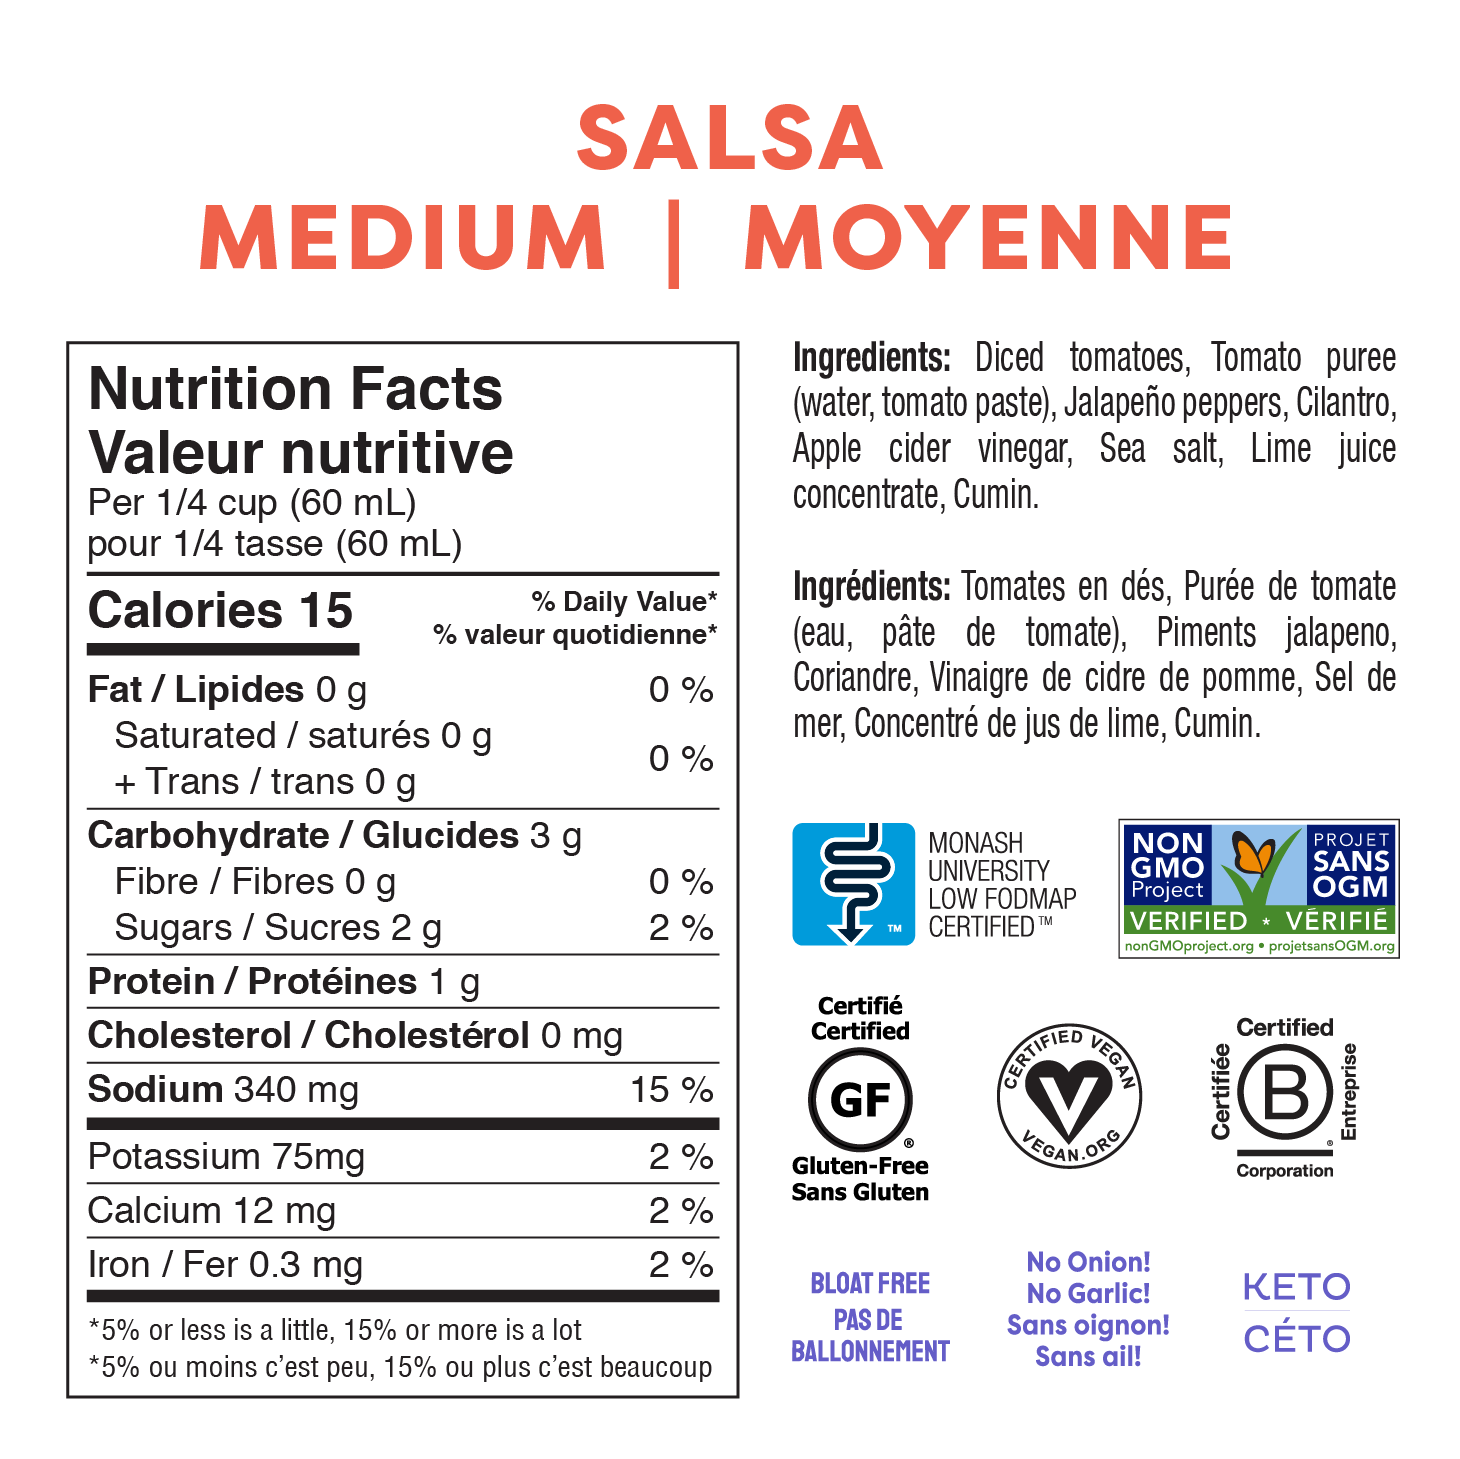 Medium Salsa